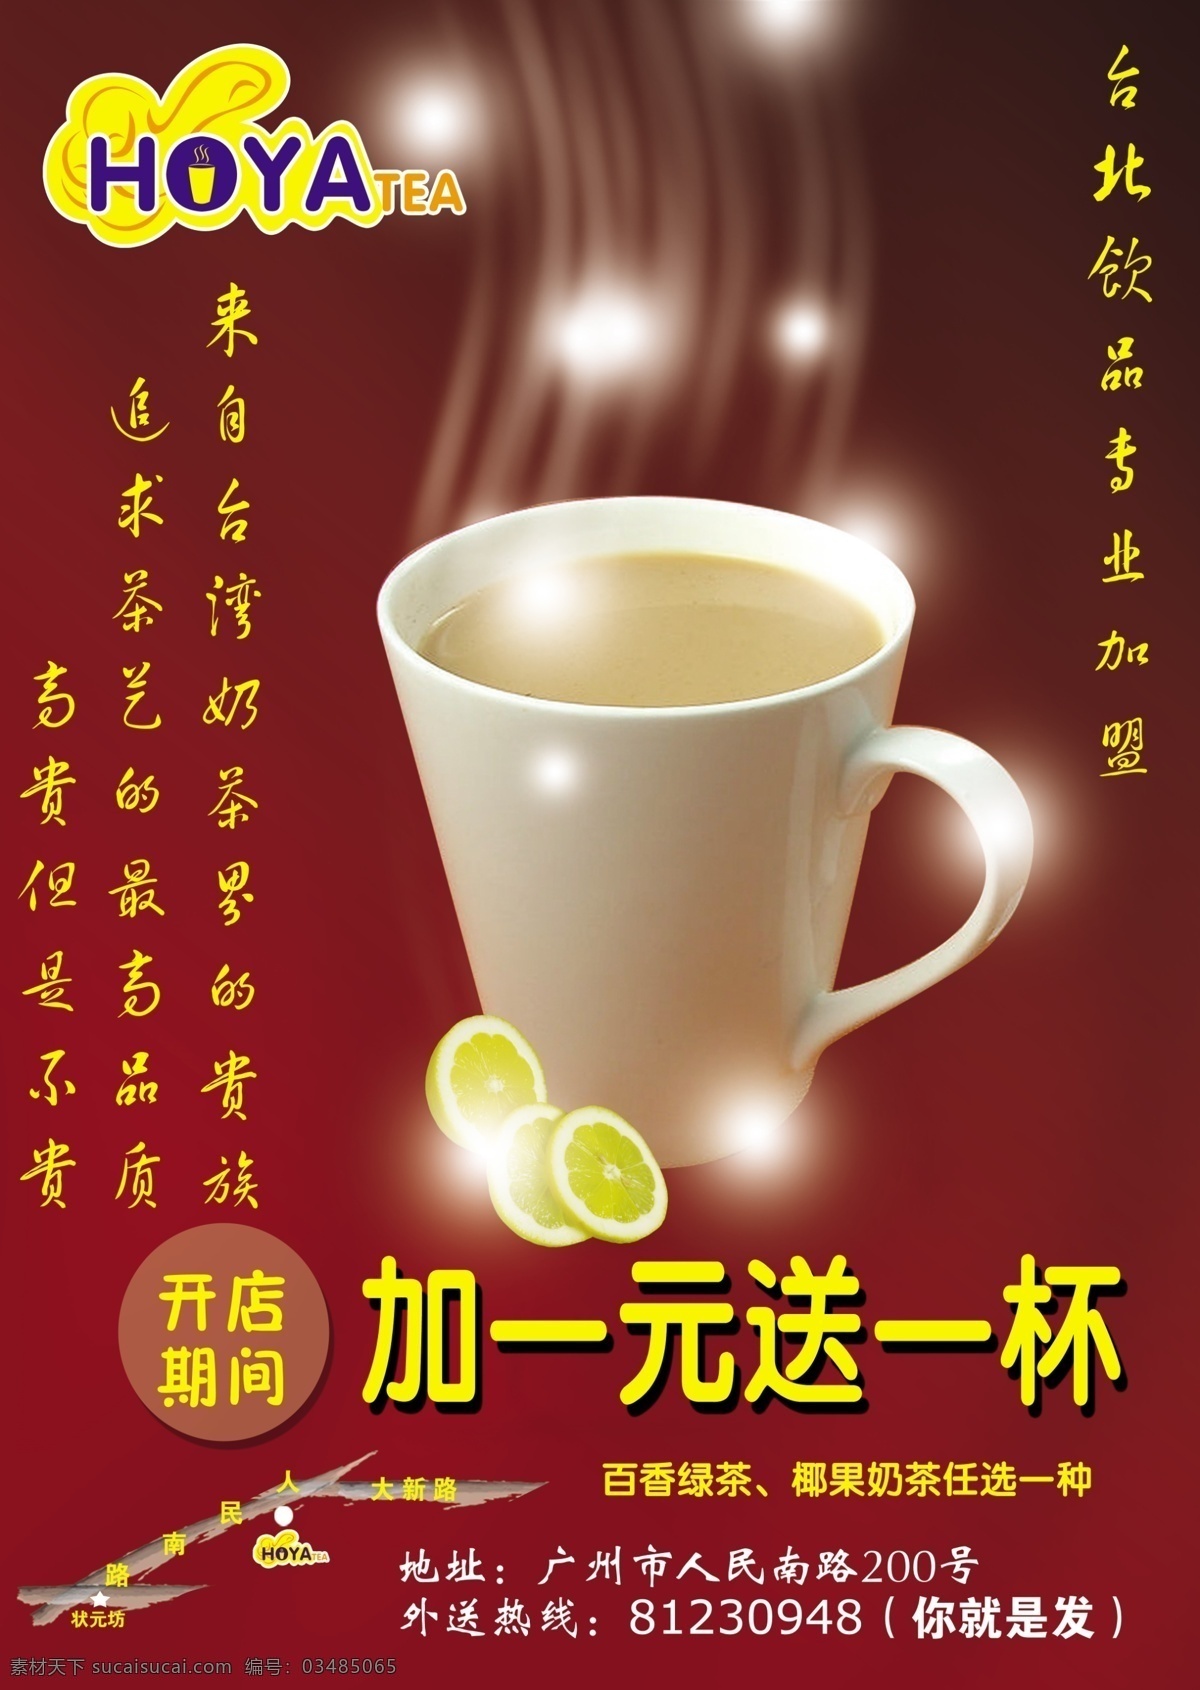 杯子 菜单菜谱 橙子 高贵 广告设计模板 宣传单 源文件 台湾 奶茶 模板下载 台湾奶茶 矢量图 日常生活